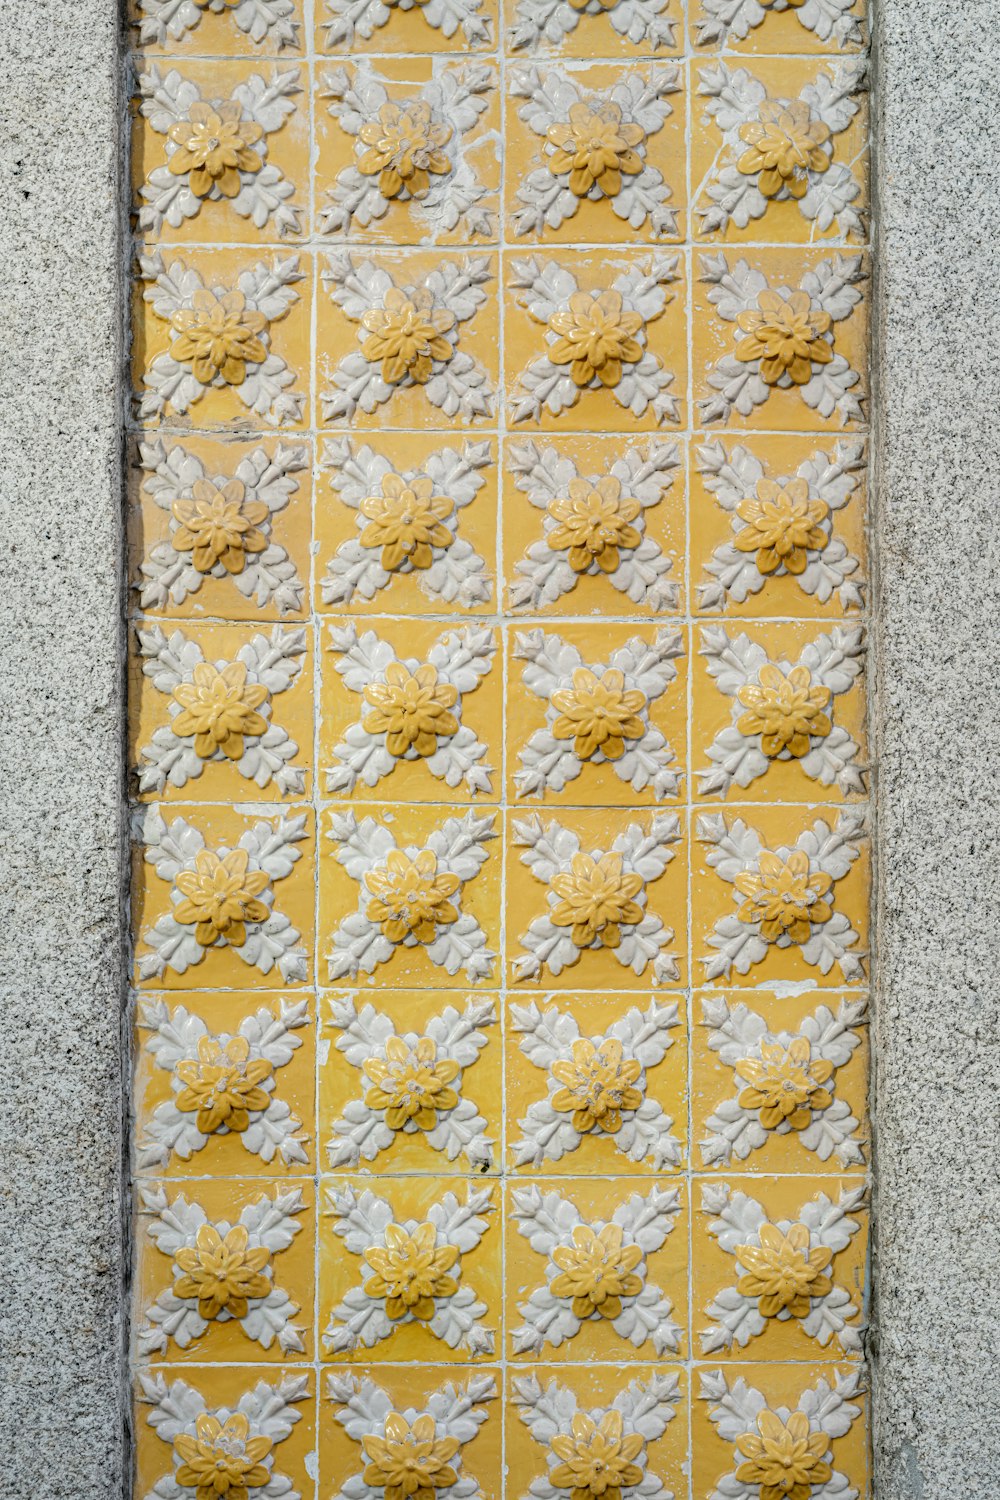 um azulejo amarelo e branco com flores brancas sobre ele